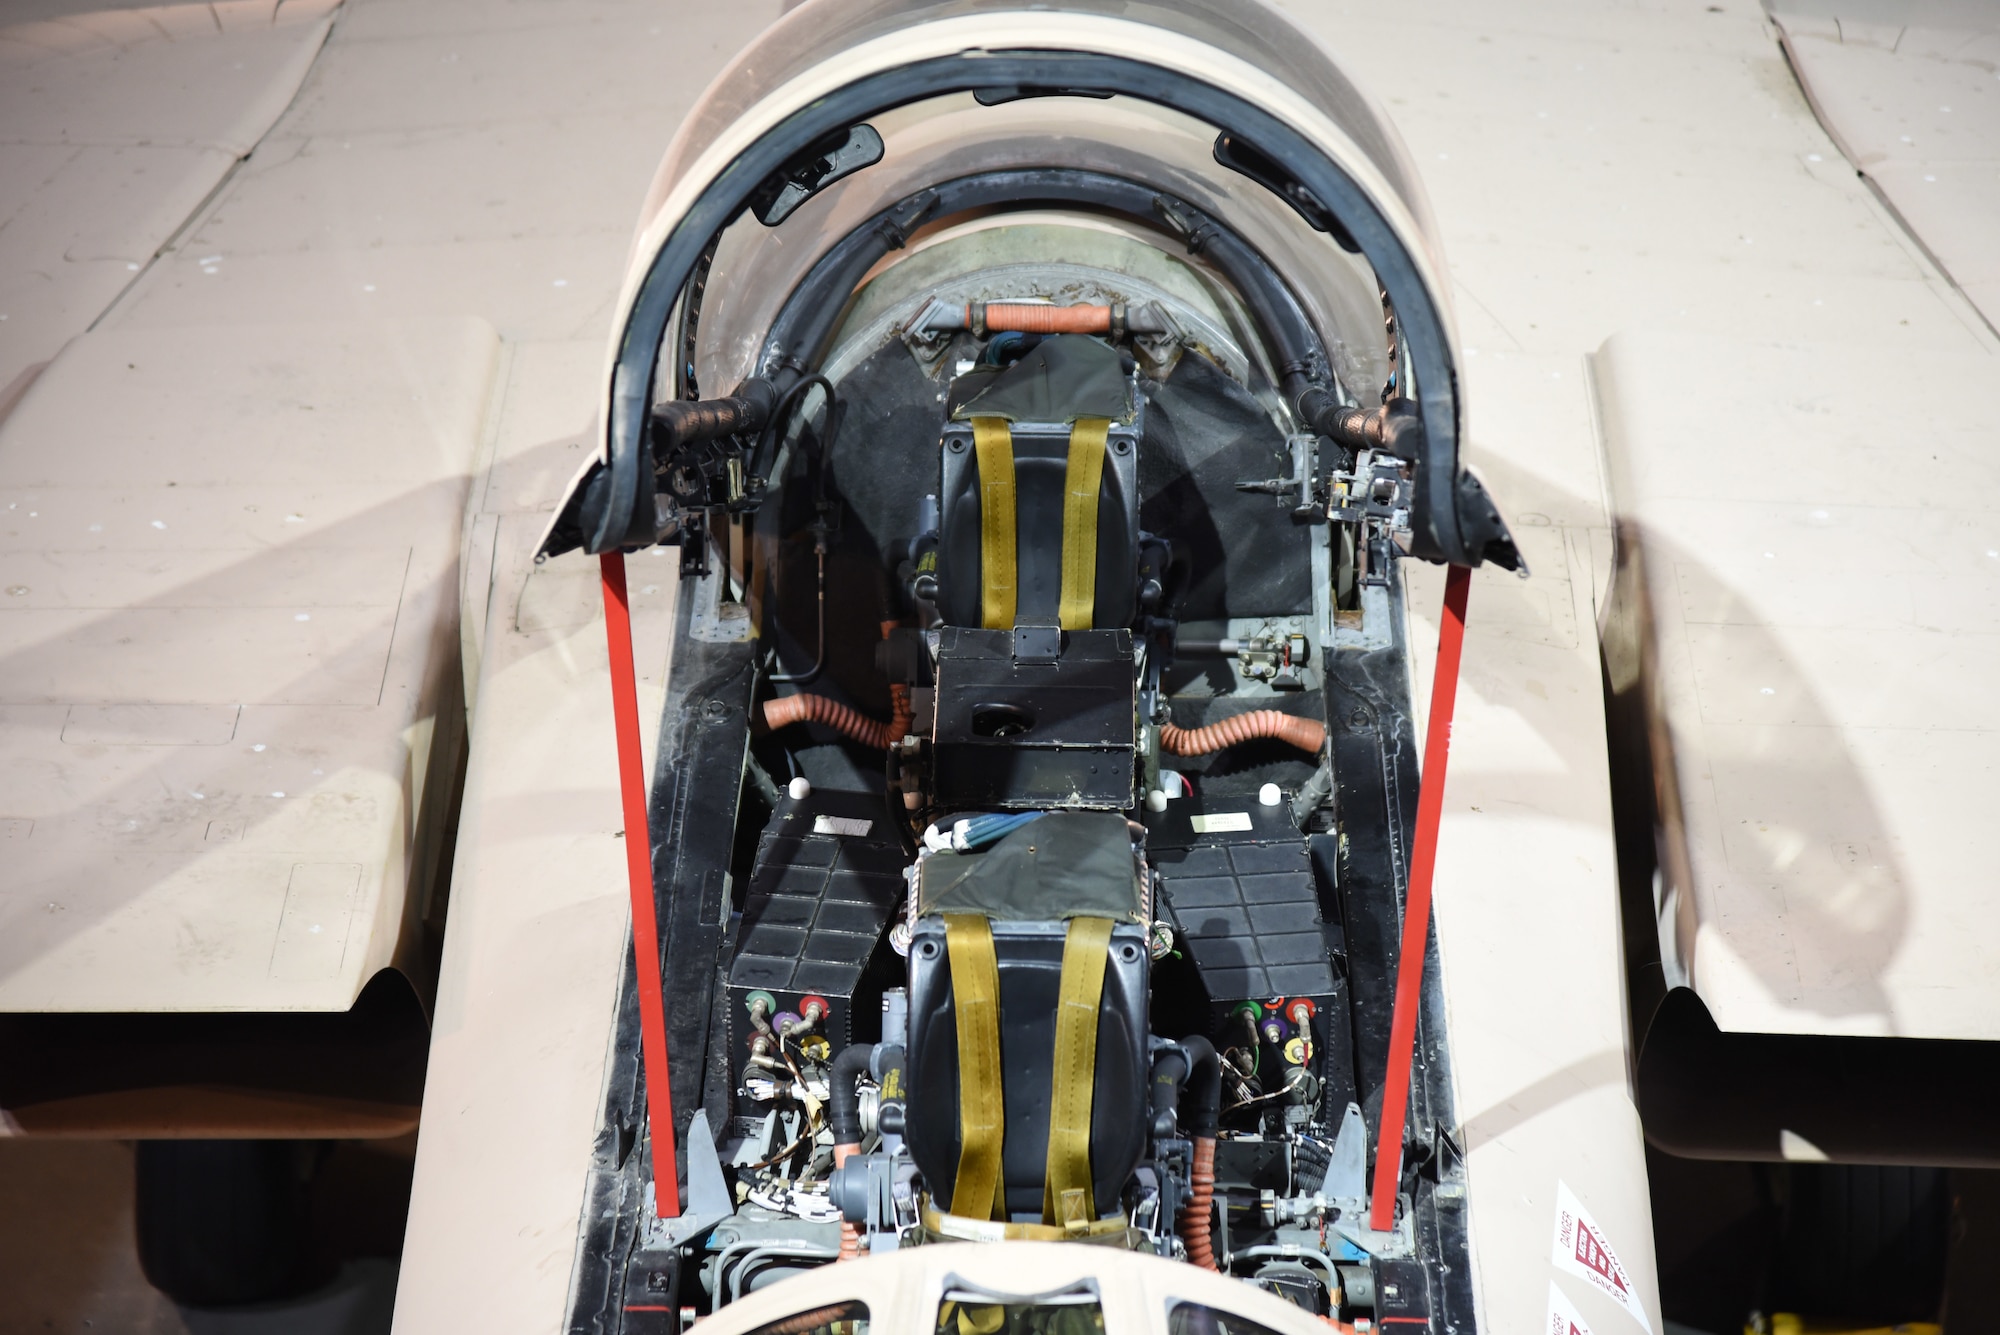 Panavia Tornado GR1 aircraft cockpit view.